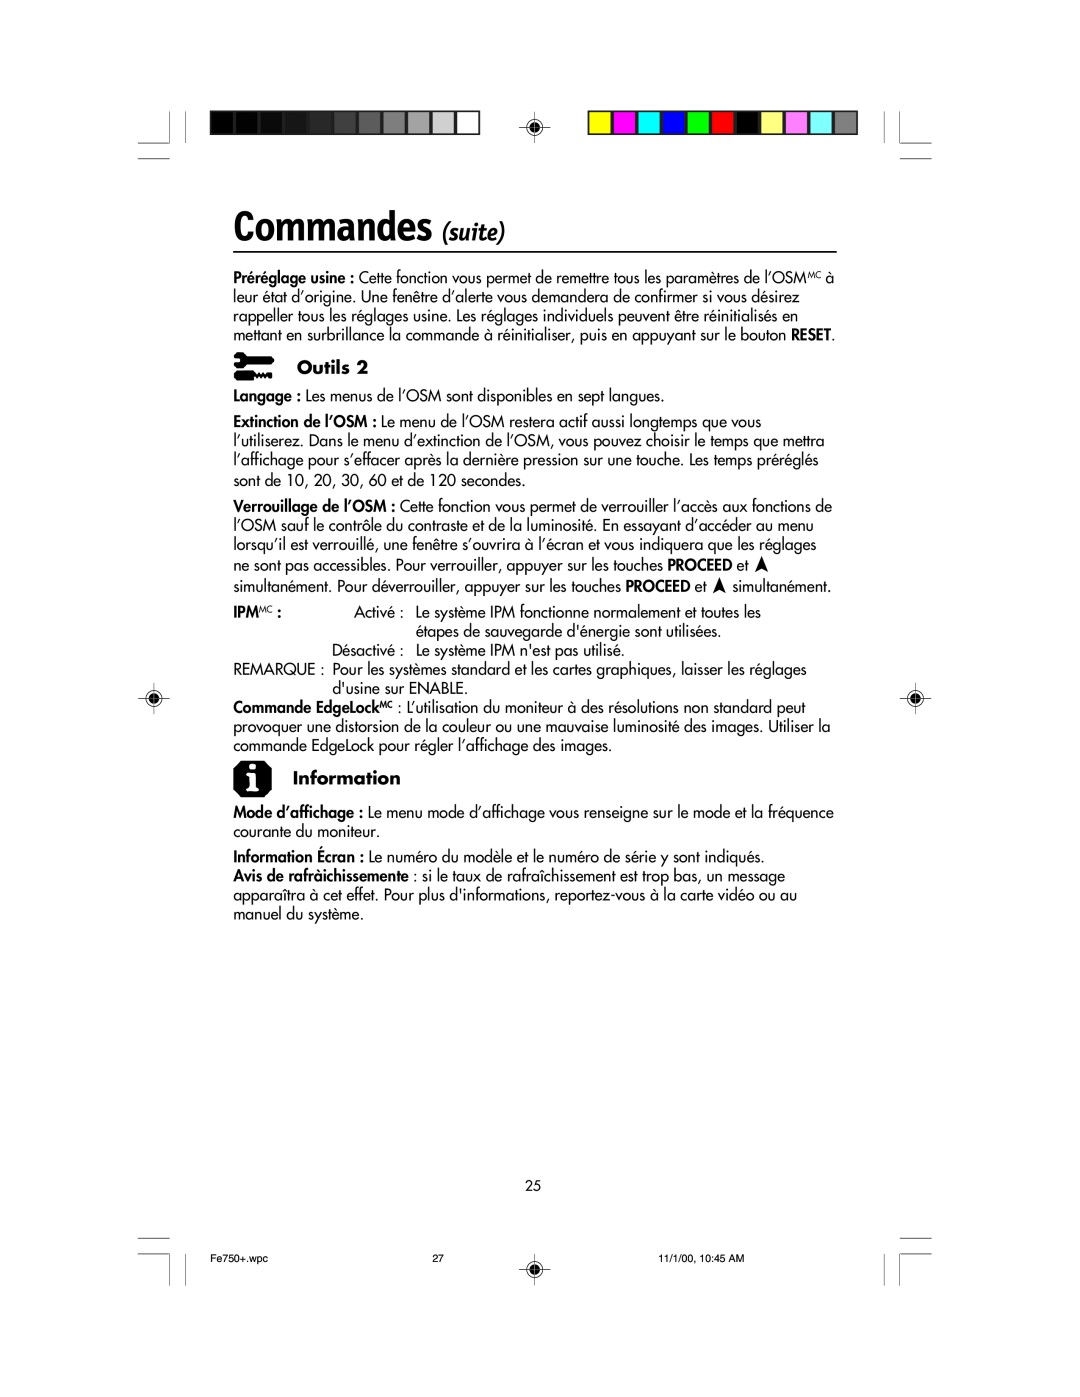 NEC FE750 Plus user manual Commandes suite, Langage Les menus de l’OSM sont disponibles en sept langues 